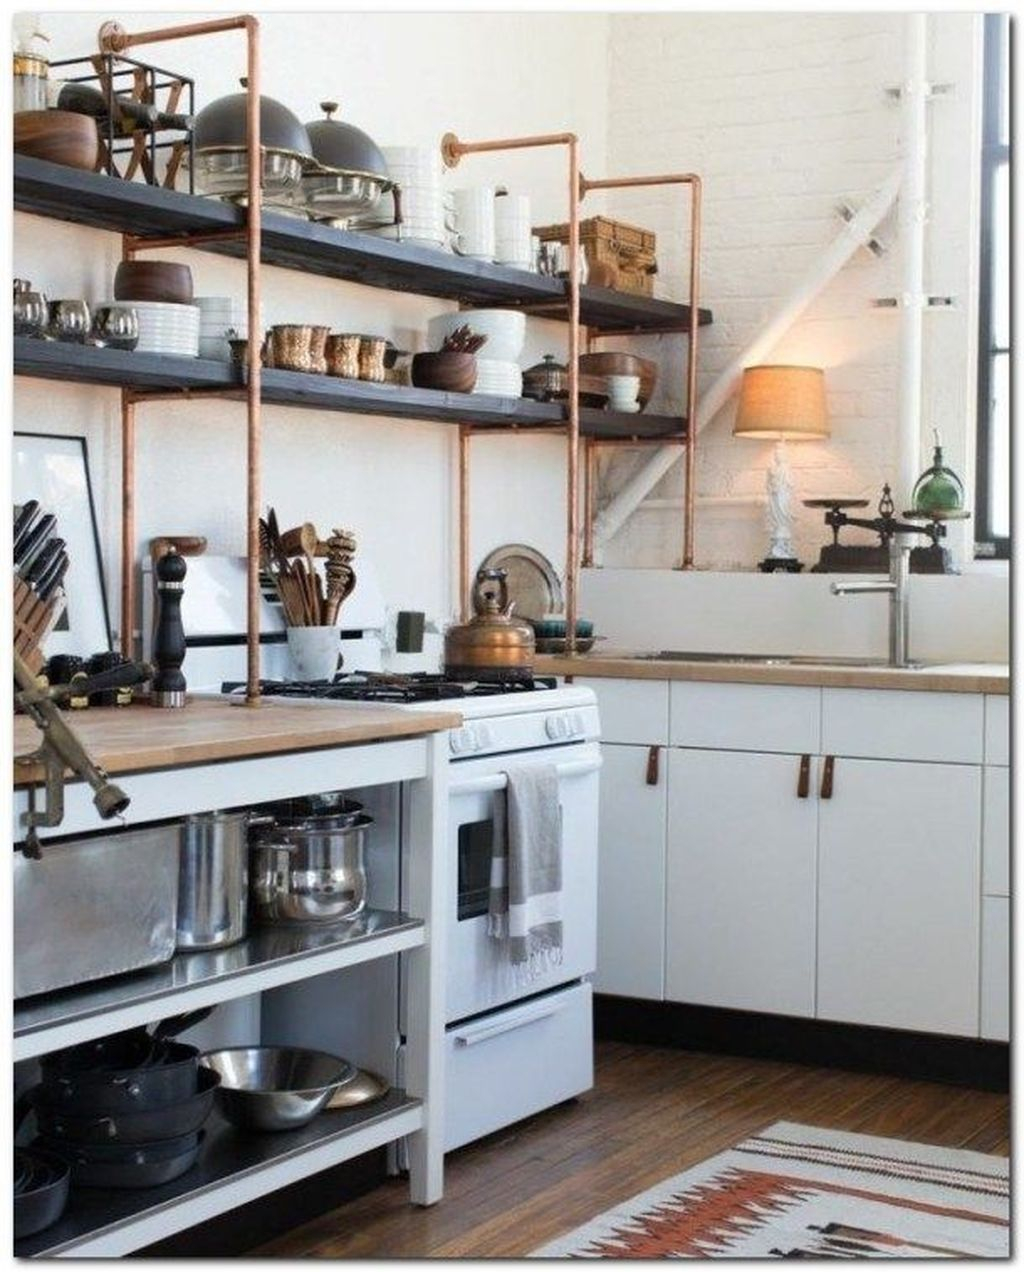 Wonderful Industrial Kitchen Shelf Design Ideas To Organize Your Kitchen40